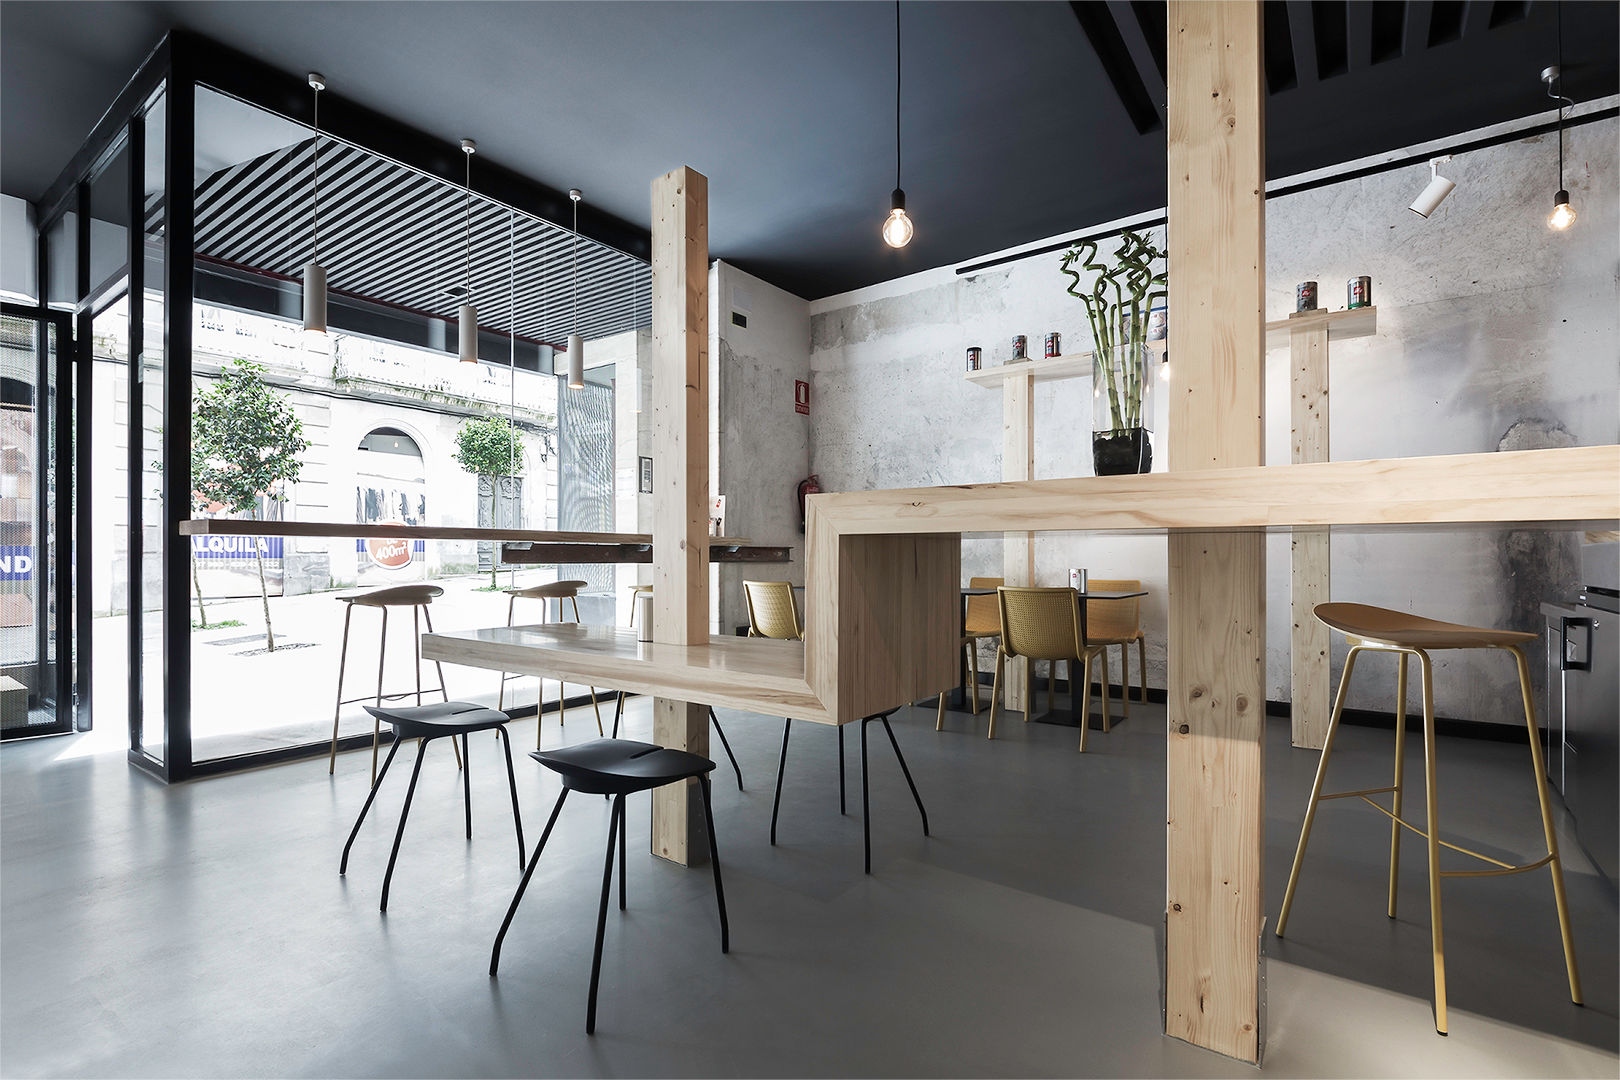 Café - Retail, Nan Arquitectos Nan Arquitectos Commercial spaces Commercial Spaces